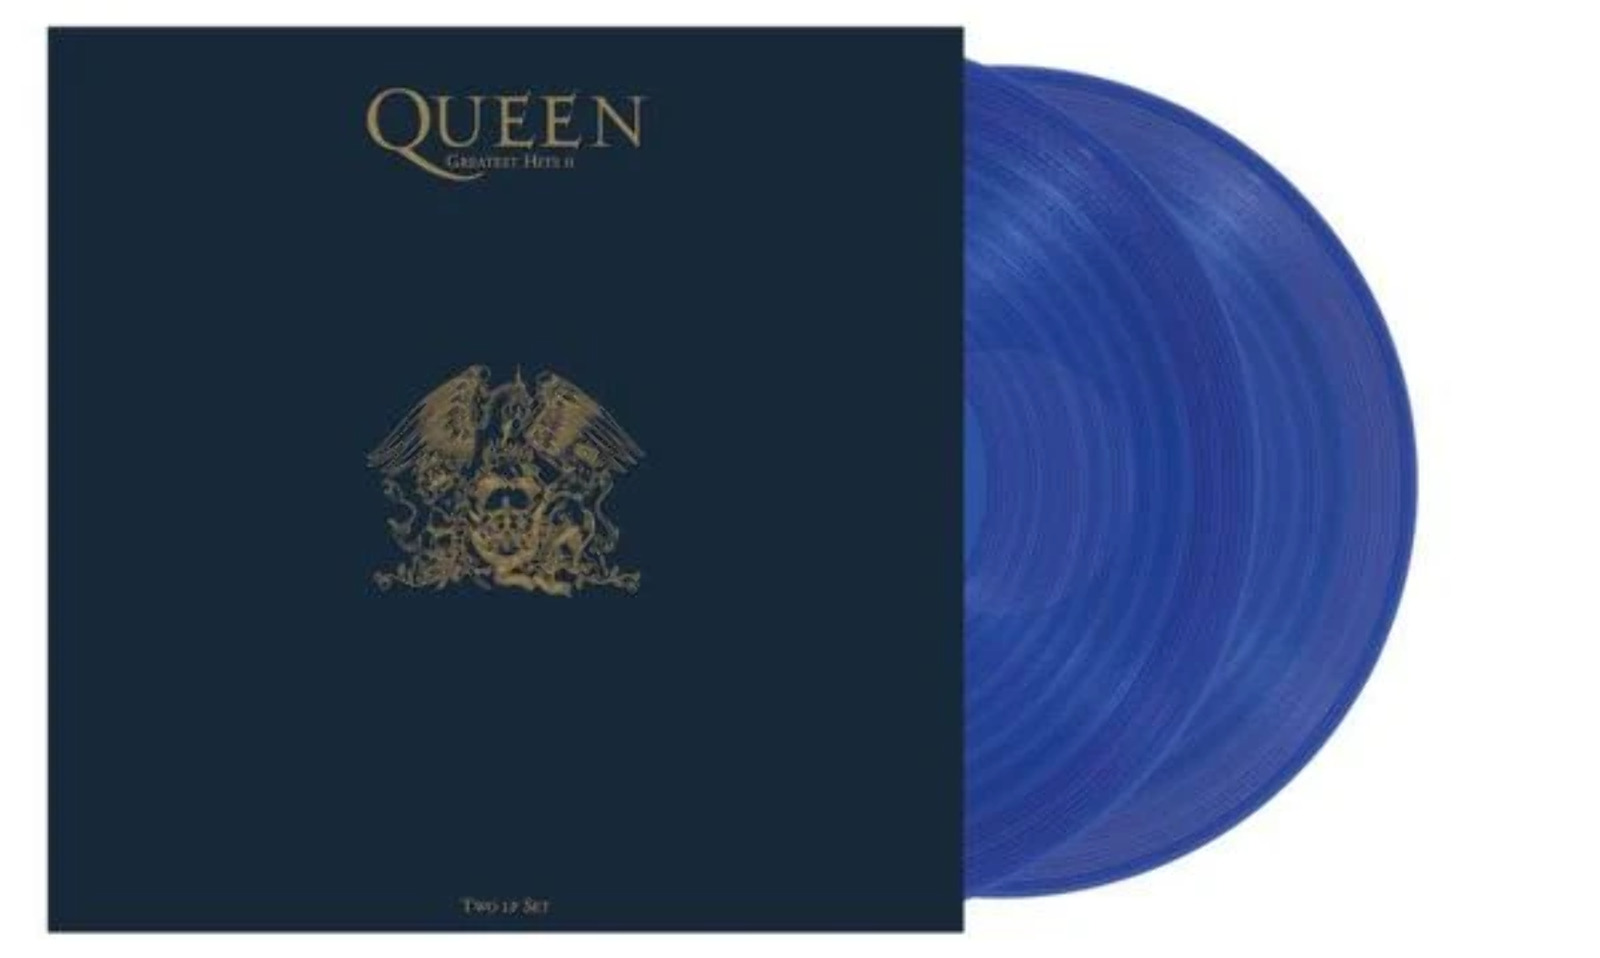 Queen - Greatest Hits II [Blue Vinyl] NEW Vinyl